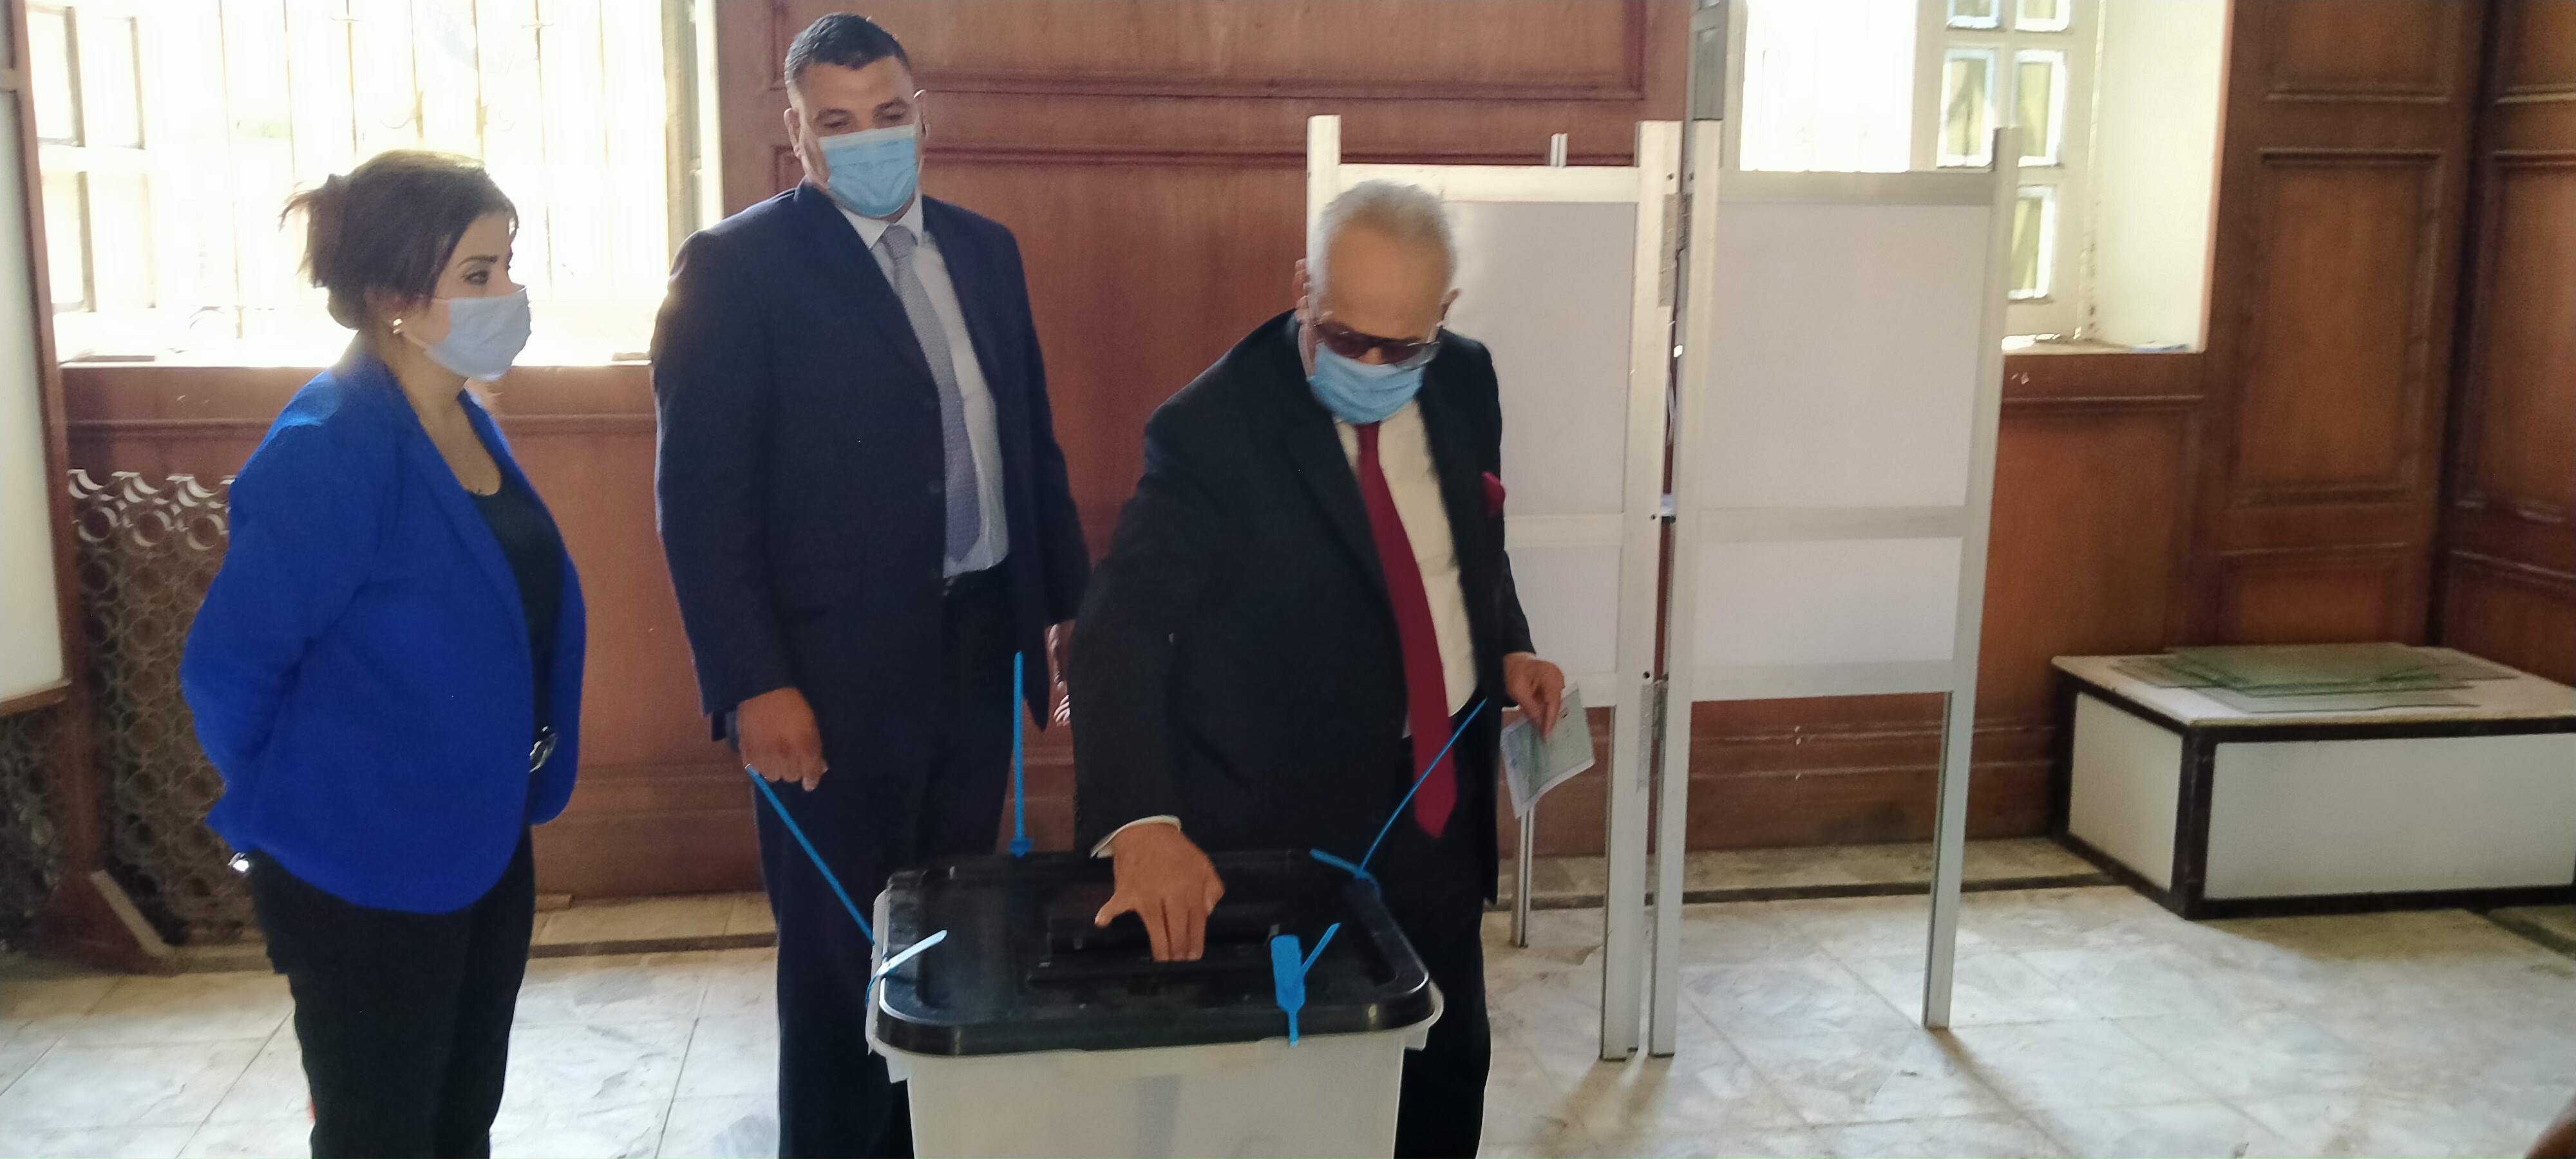 بهاء أبو شقة يدلى بصوته بانتخابات مجلس الشيوخ بالدقى  (2)